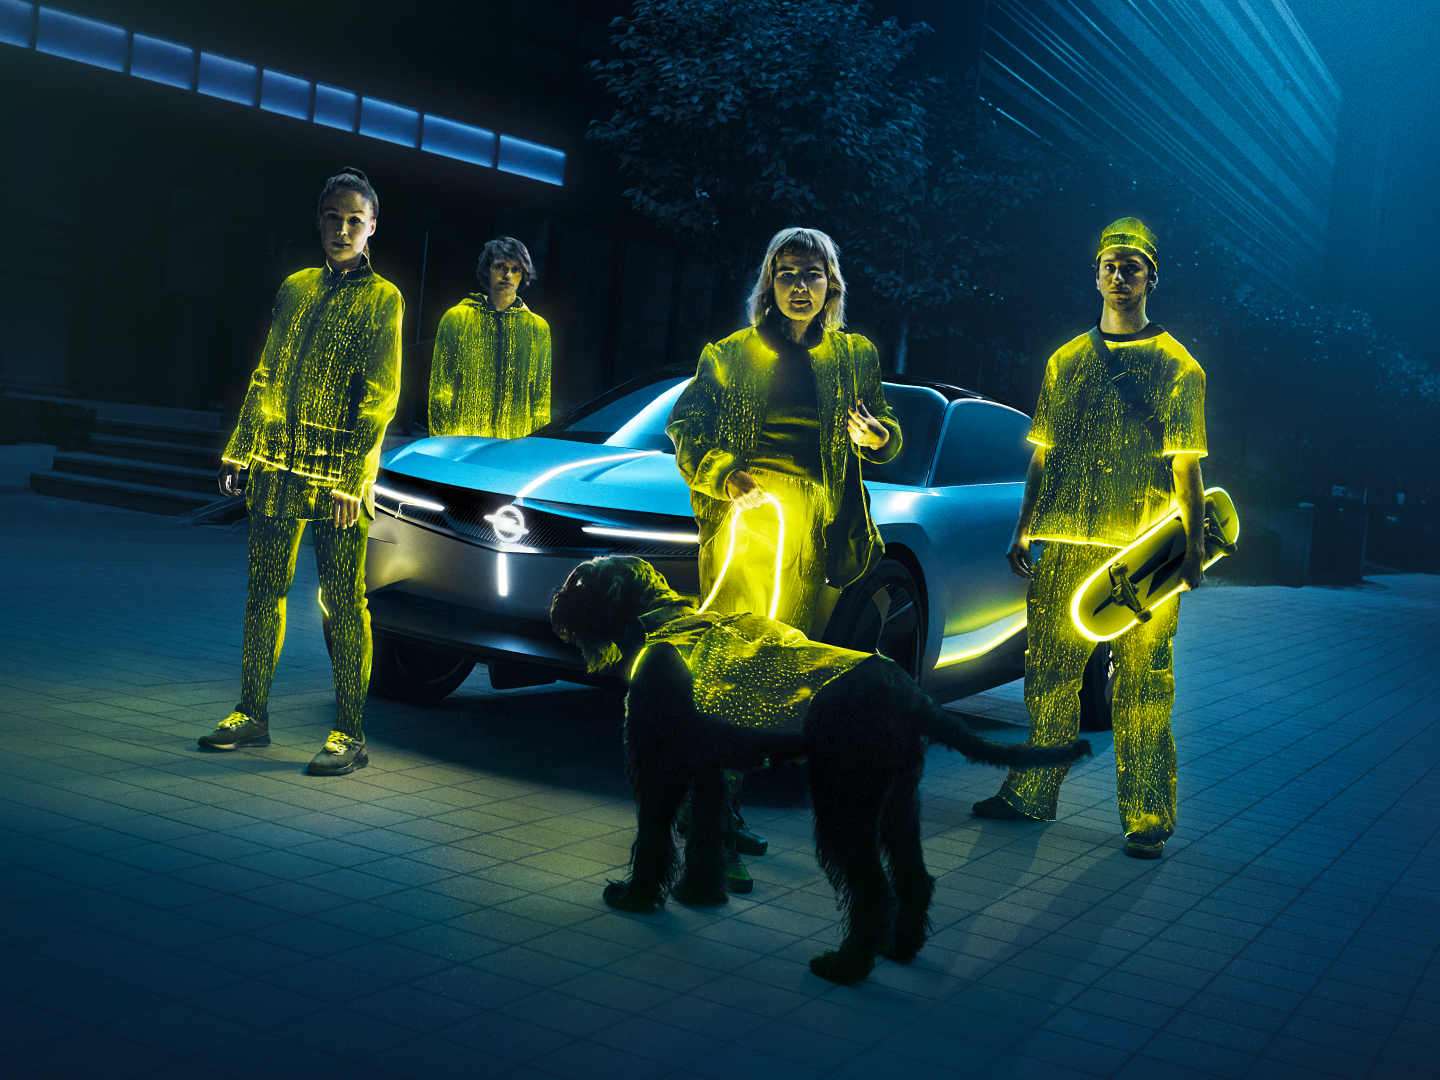 Opel, akıllı ışığın geleceğini gözler önüne seriyor